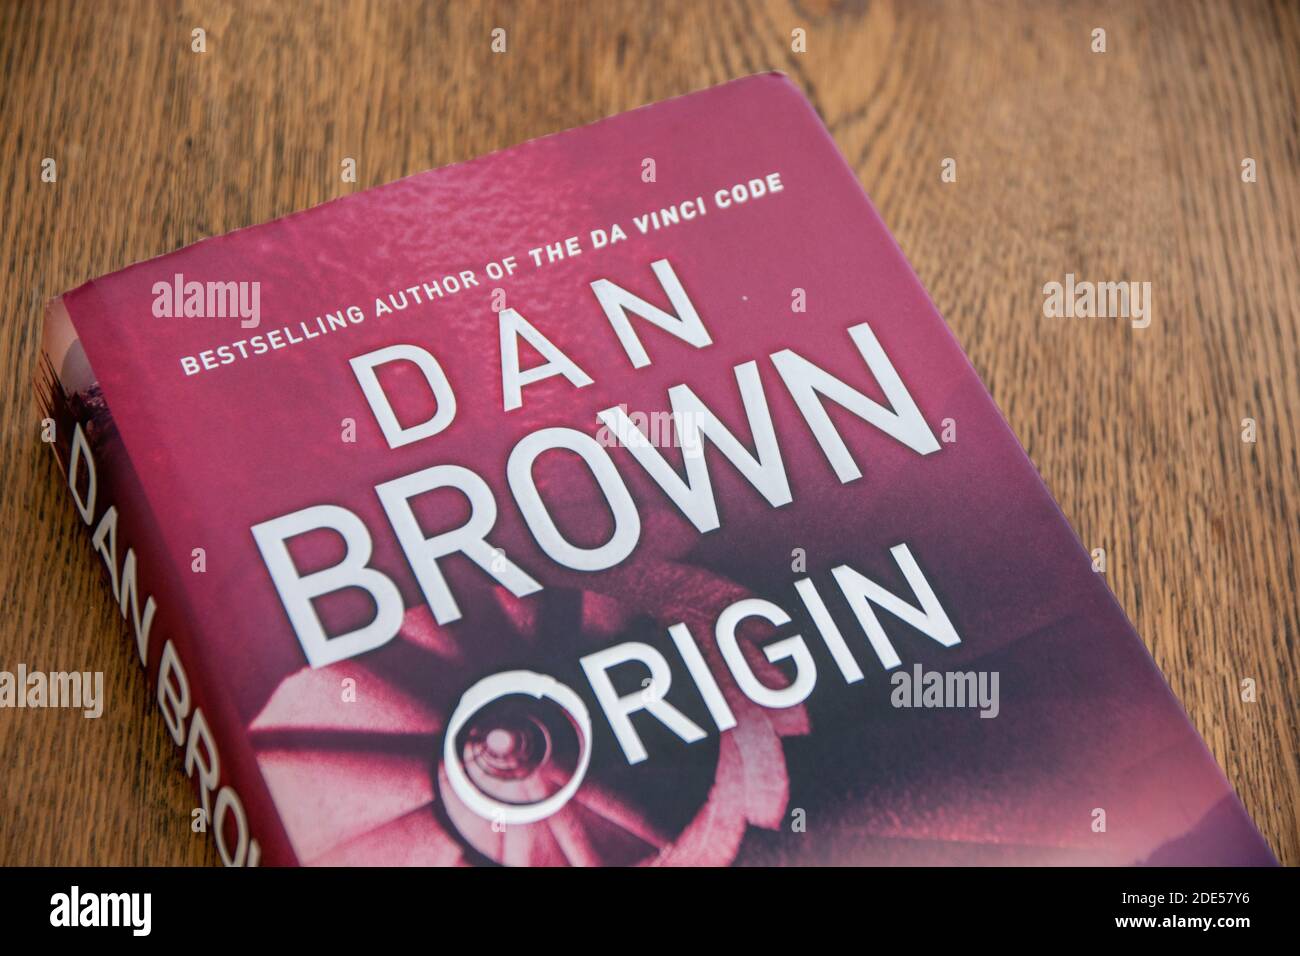 Dan Brown ist ein amerikanischer Autor, der vor allem für seine Thriller-Romane Robert Langdon Angels & Demons, The Da Vinci Code, The Lost Symbol, Origin bekannt ist Stockfoto